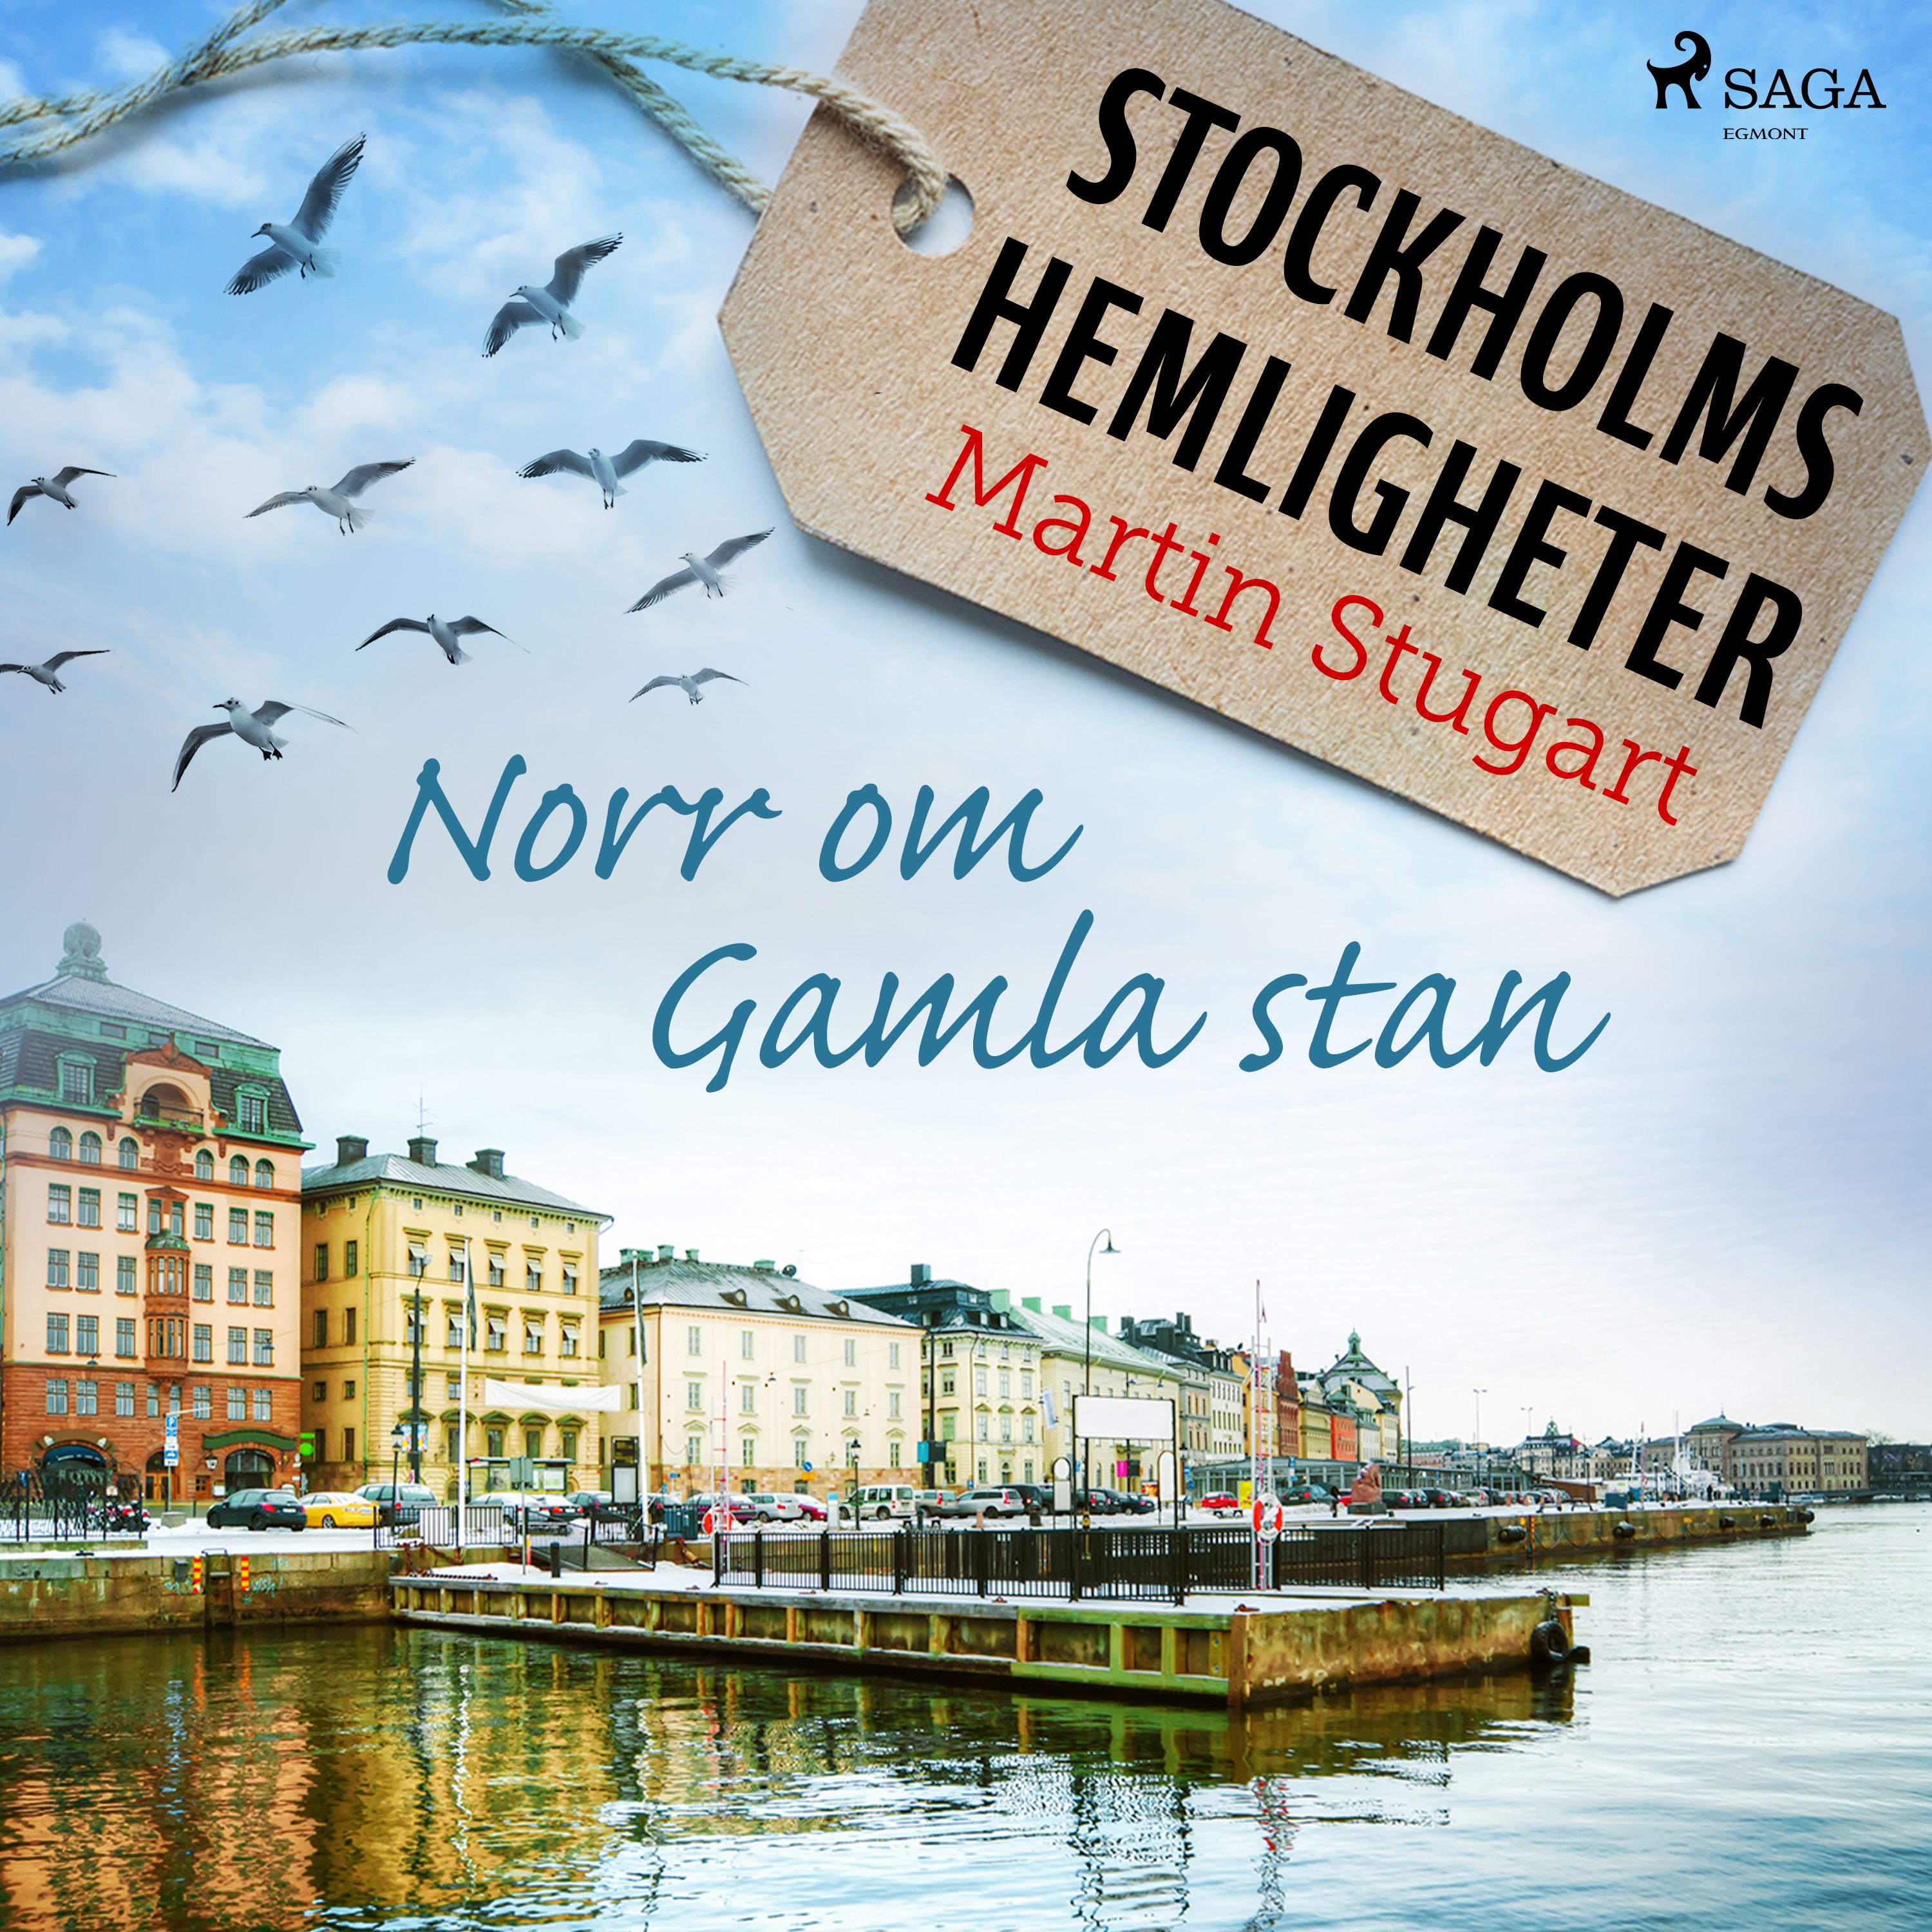 Stockholms hemligheter: Norr om Gamla stan, audiobook by Martin Stugart